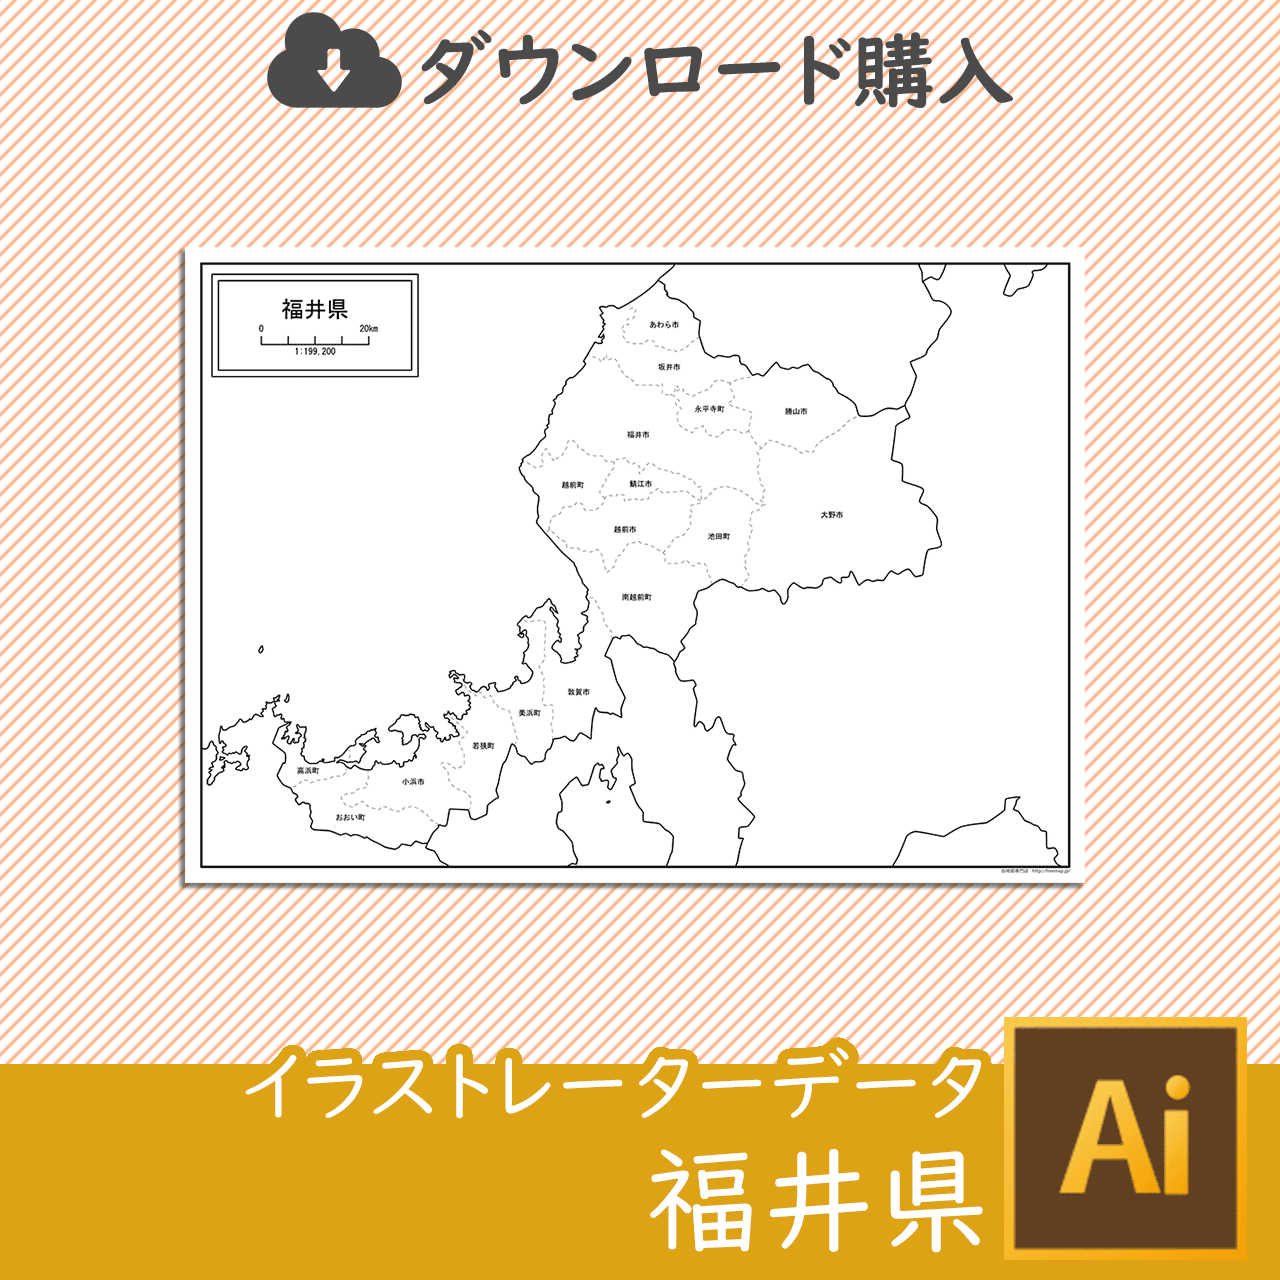 福井県の白地図データのサムネイル画像